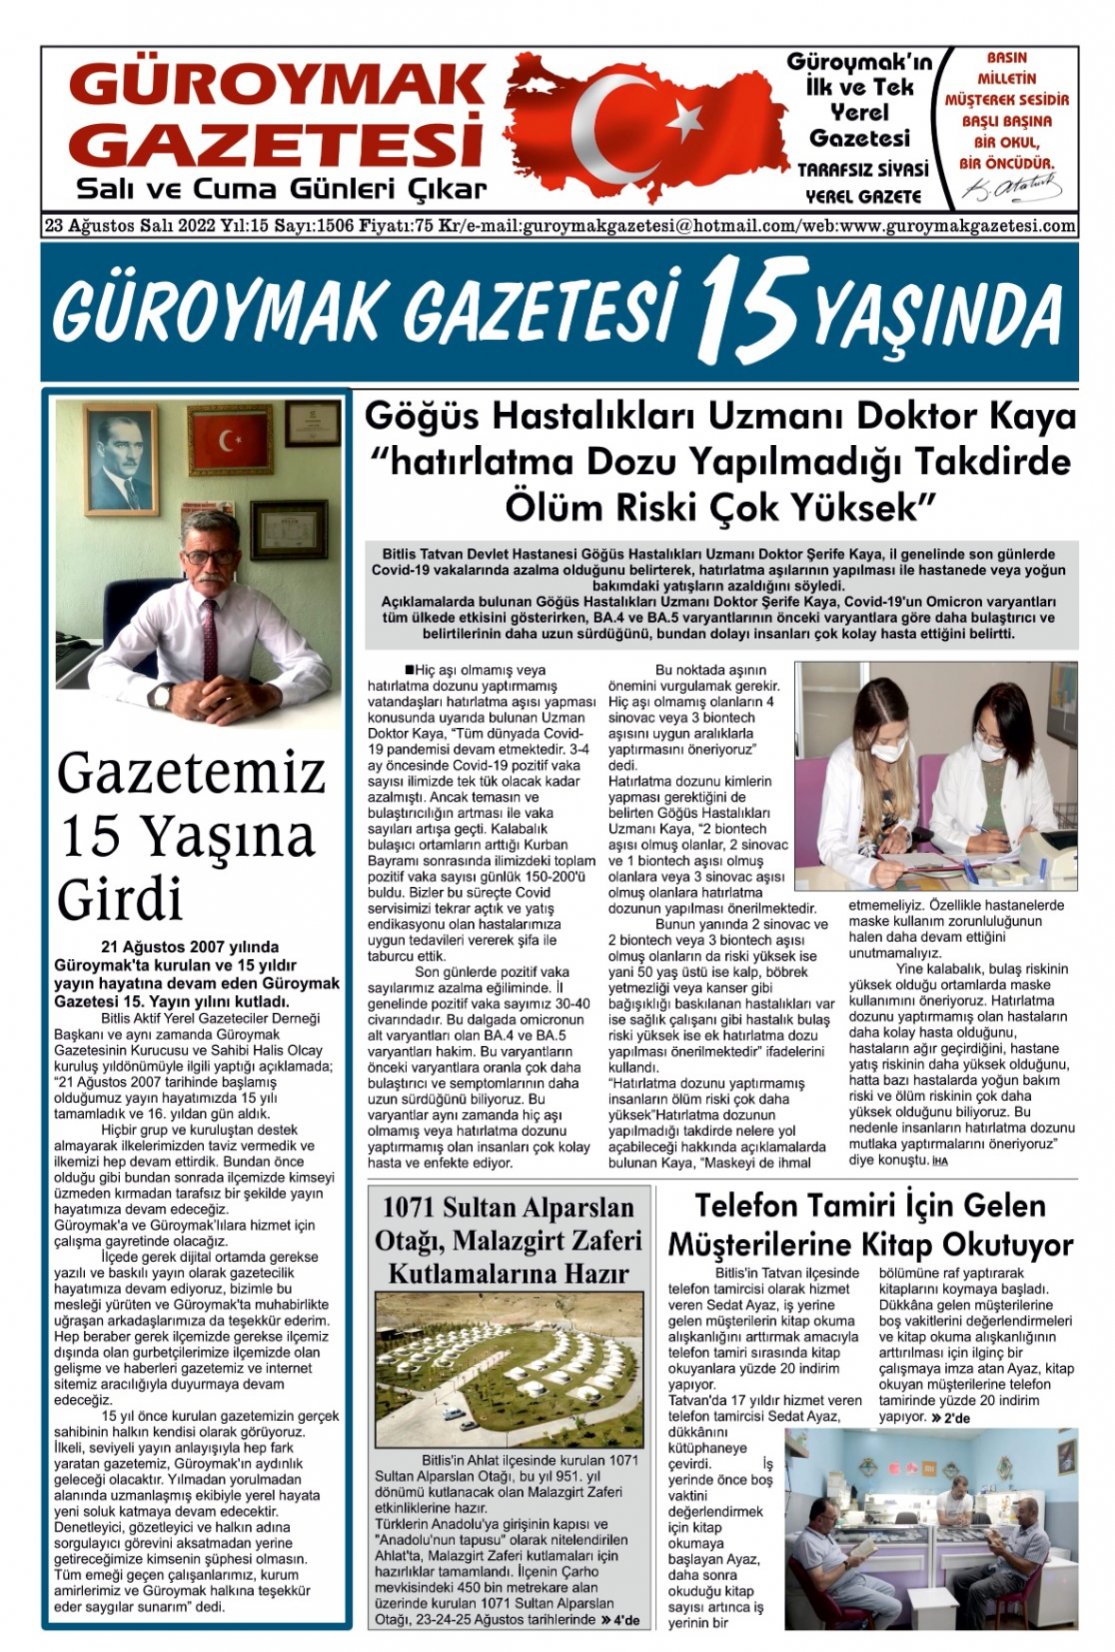 Güroymak Gazetesi WhatsApp Image 2022-08-23 at 08.59.42.jpeg Sayılı Gazete Küpürü